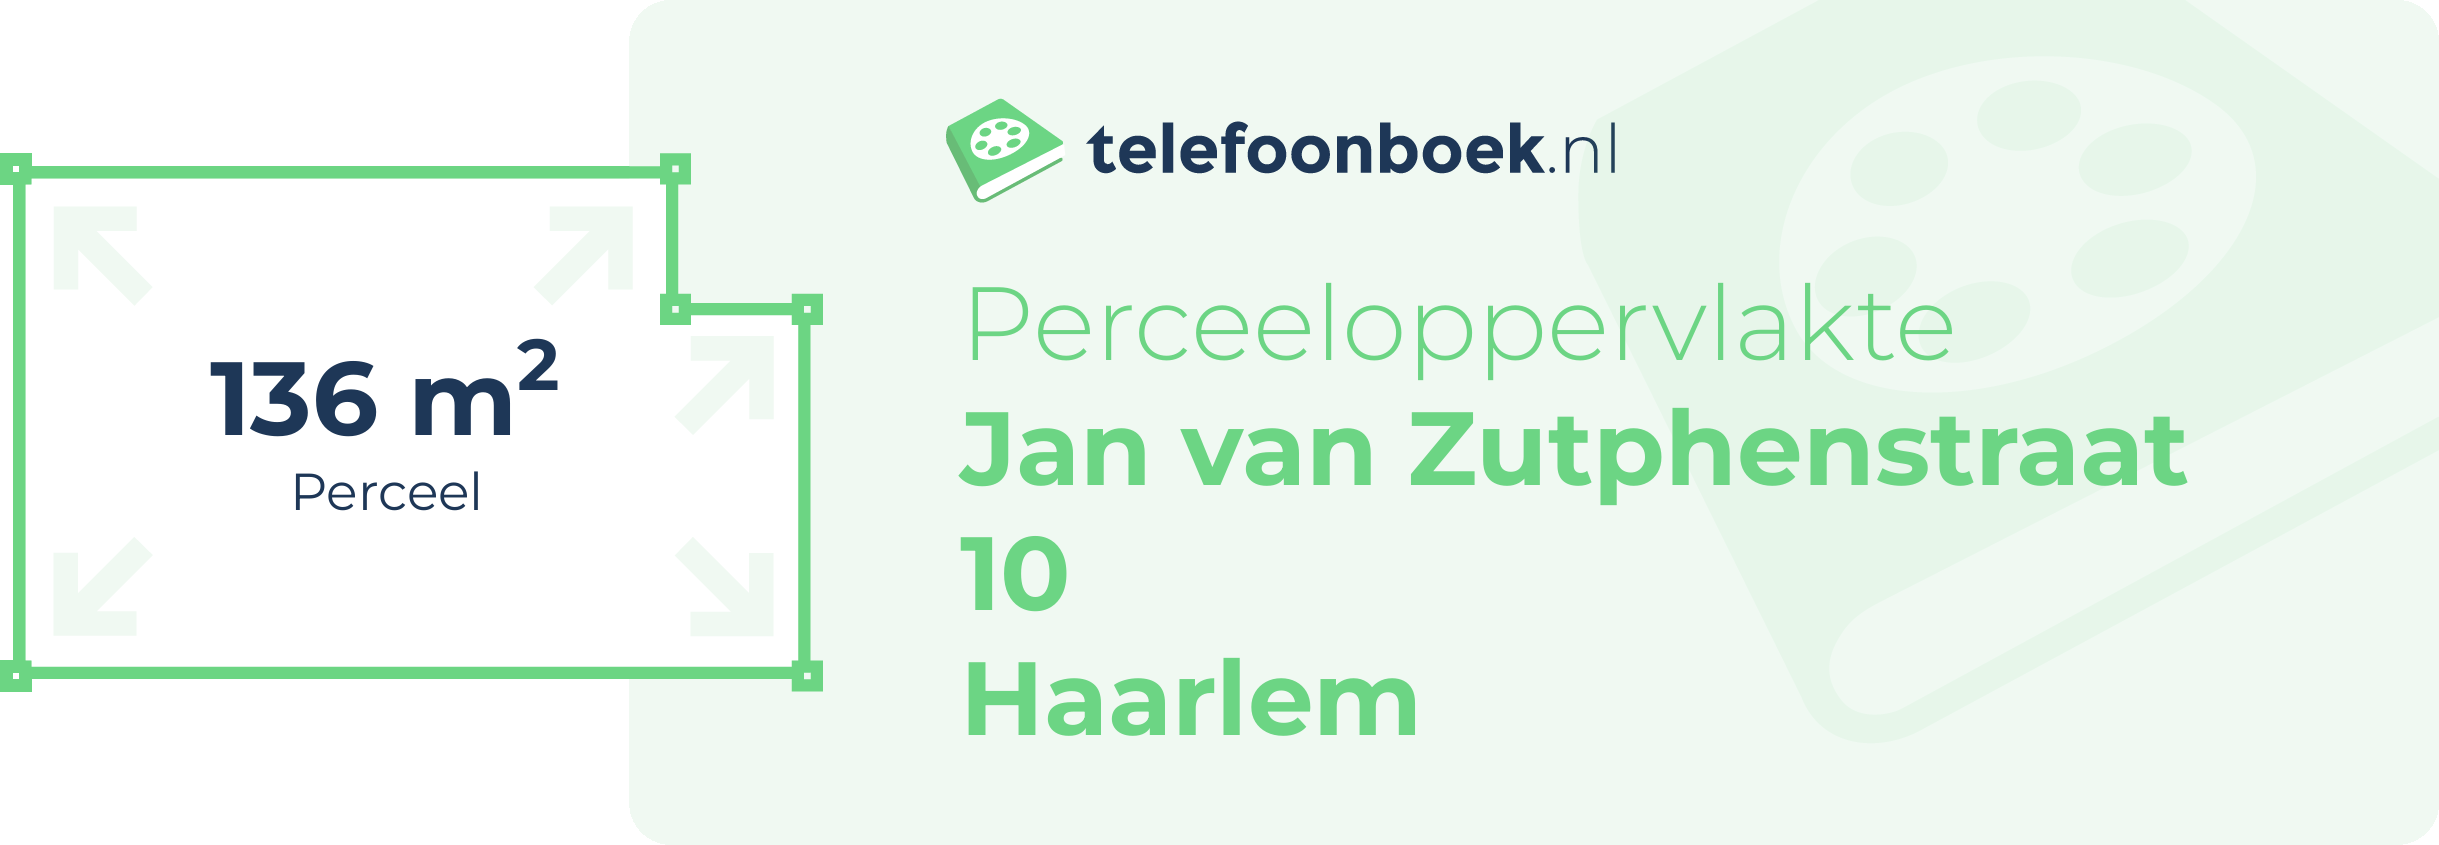 Perceeloppervlakte Jan Van Zutphenstraat 10 Haarlem